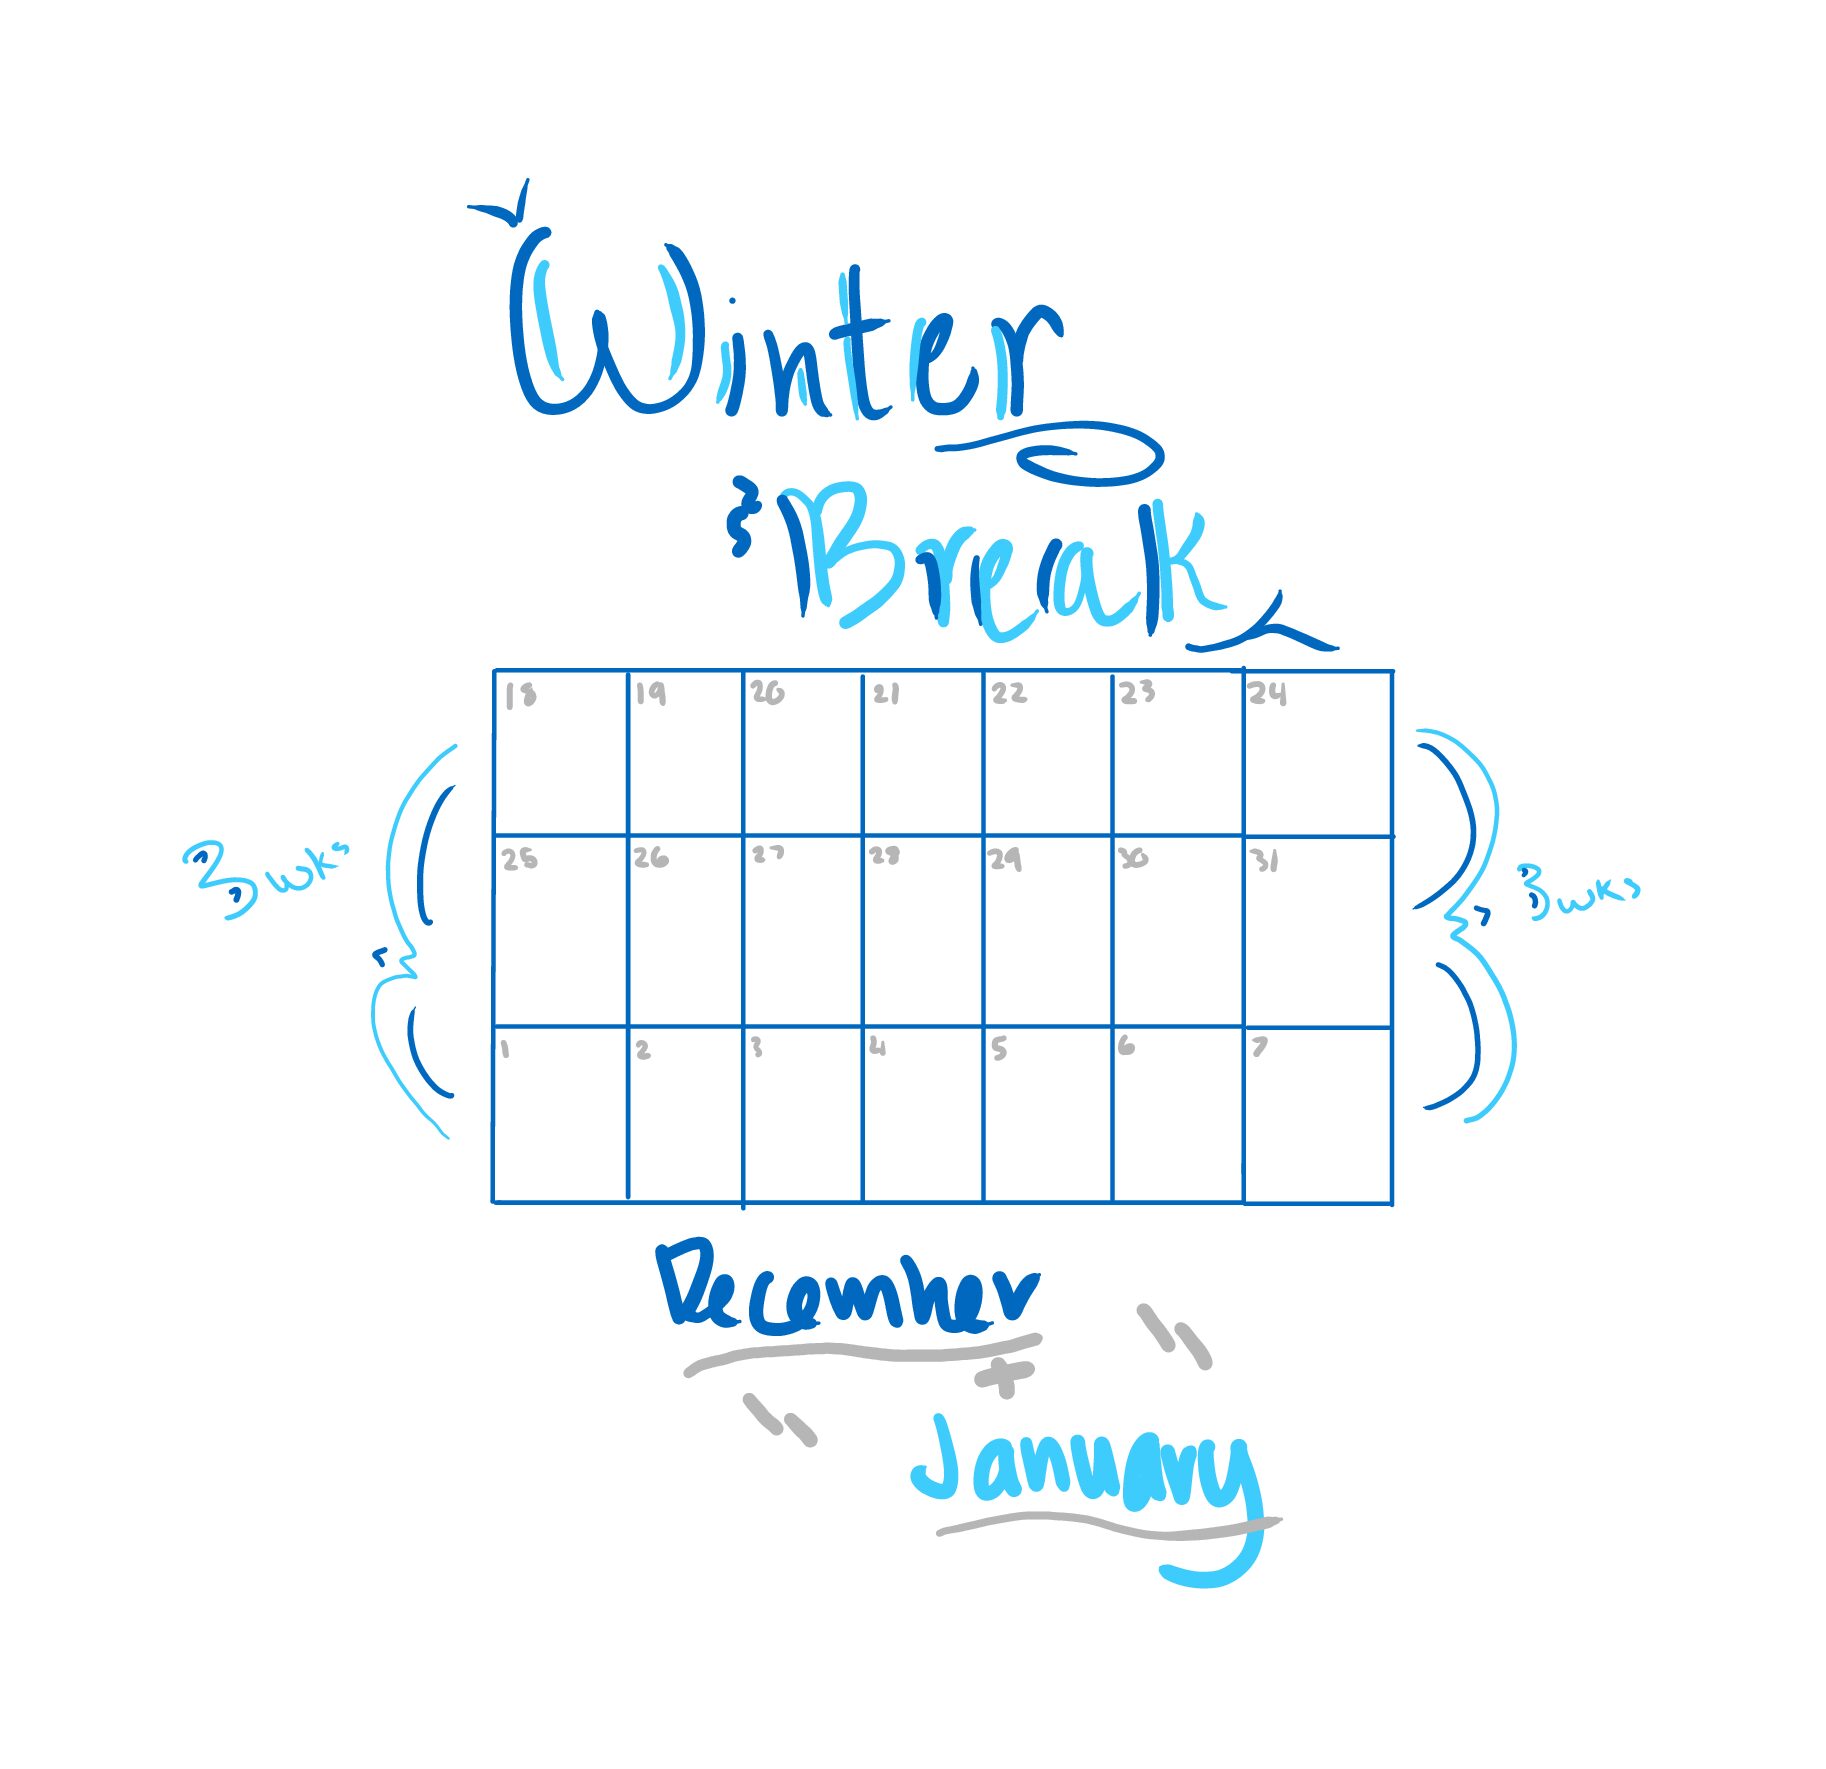 Extend winter break by one week